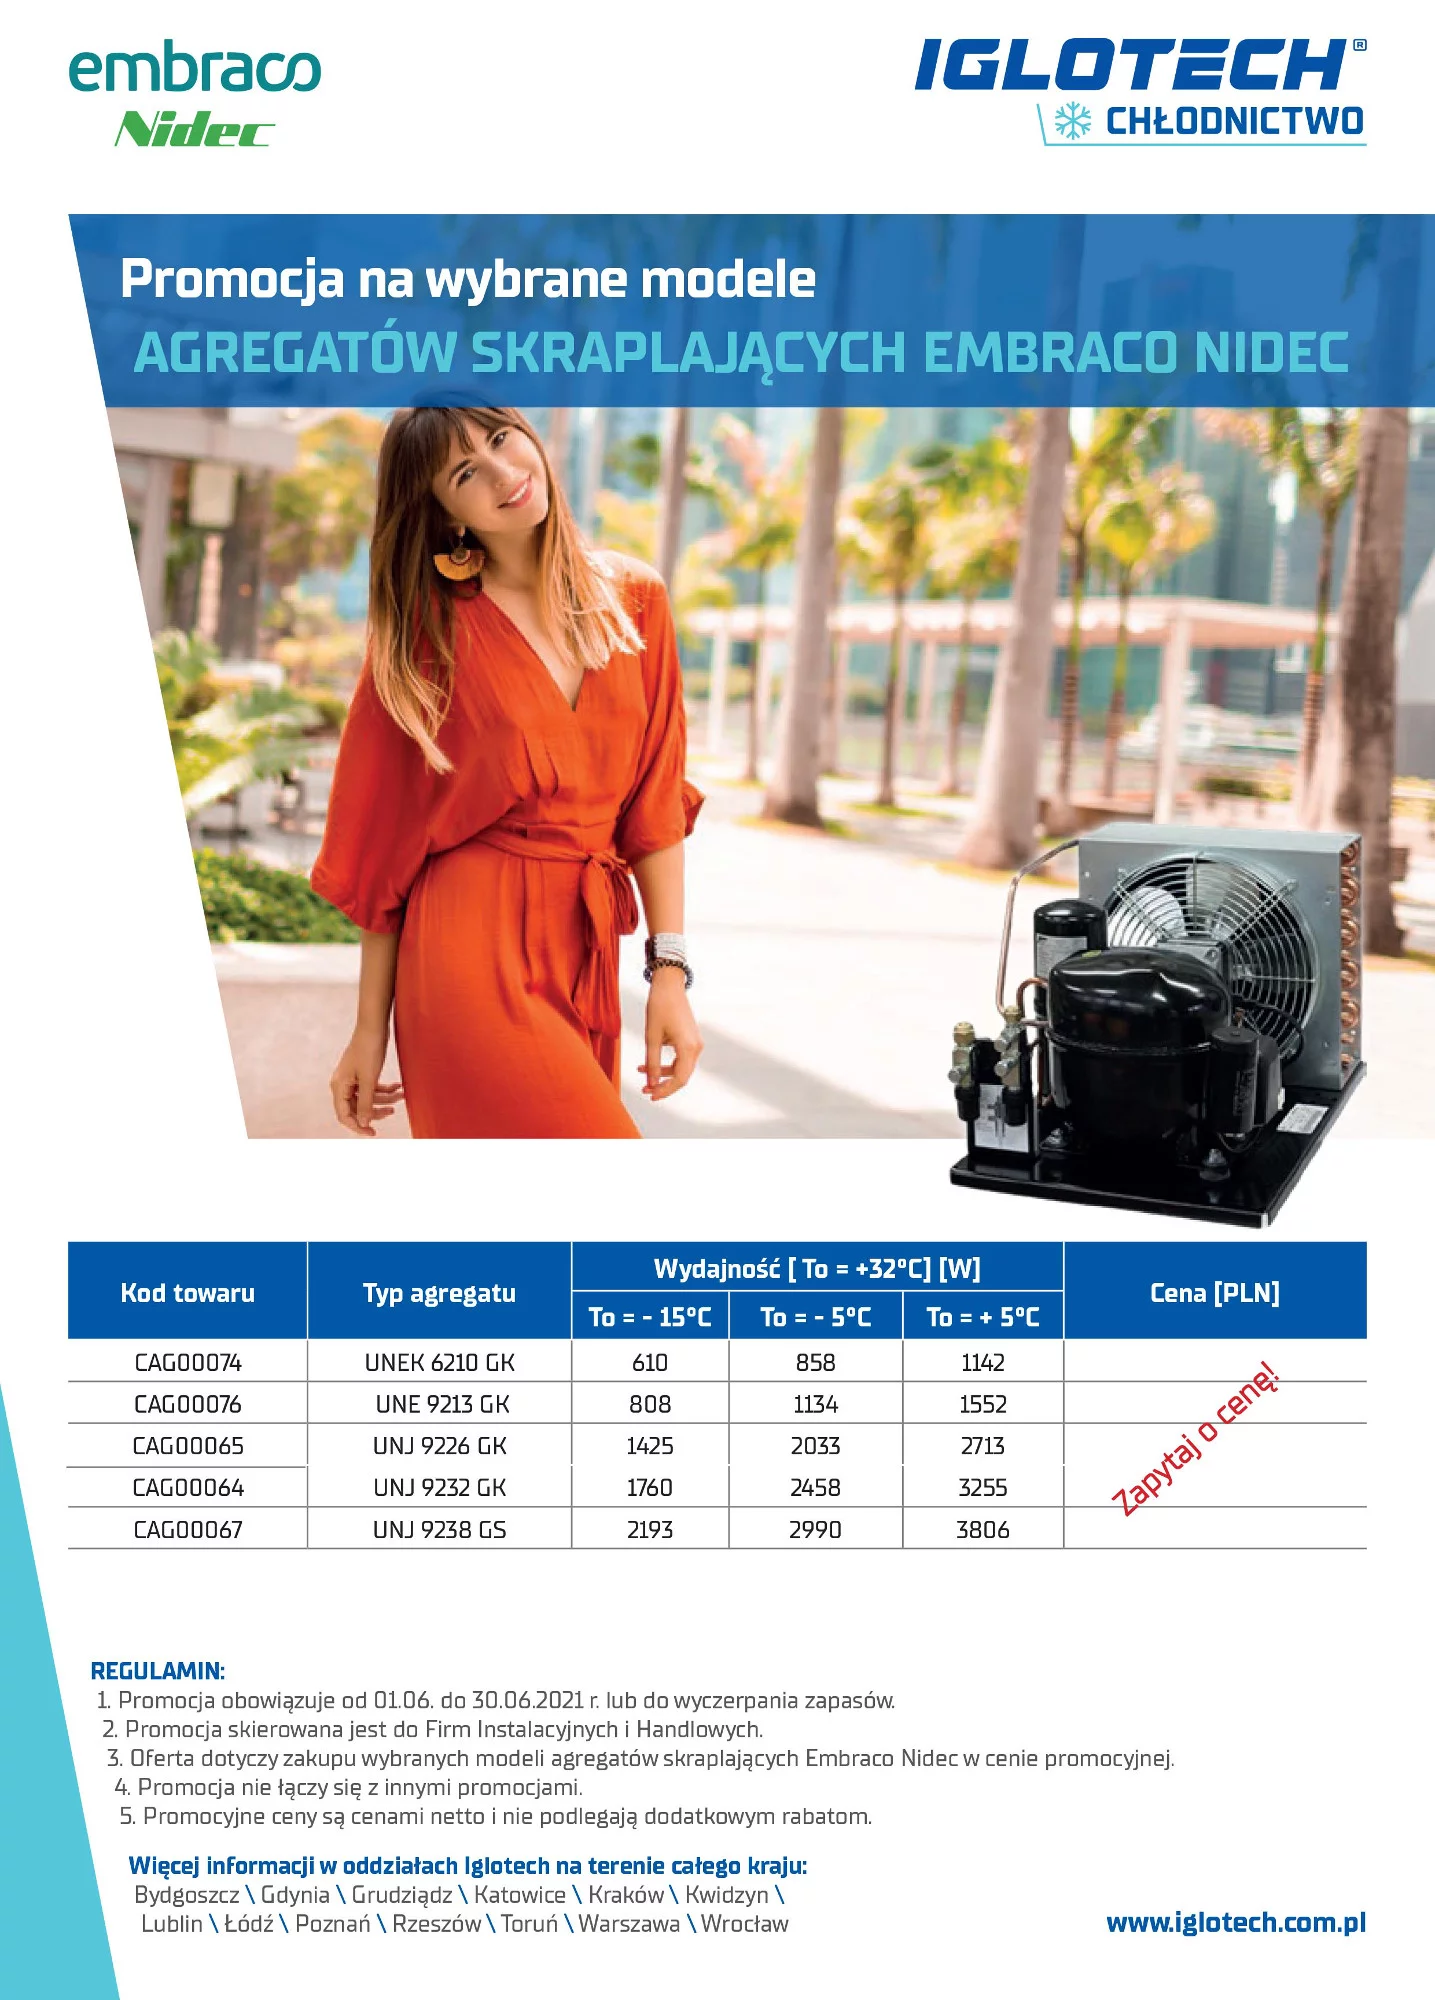 Promocja na wybrane modele Agregatów Skraplających EMBRACO NIDEC